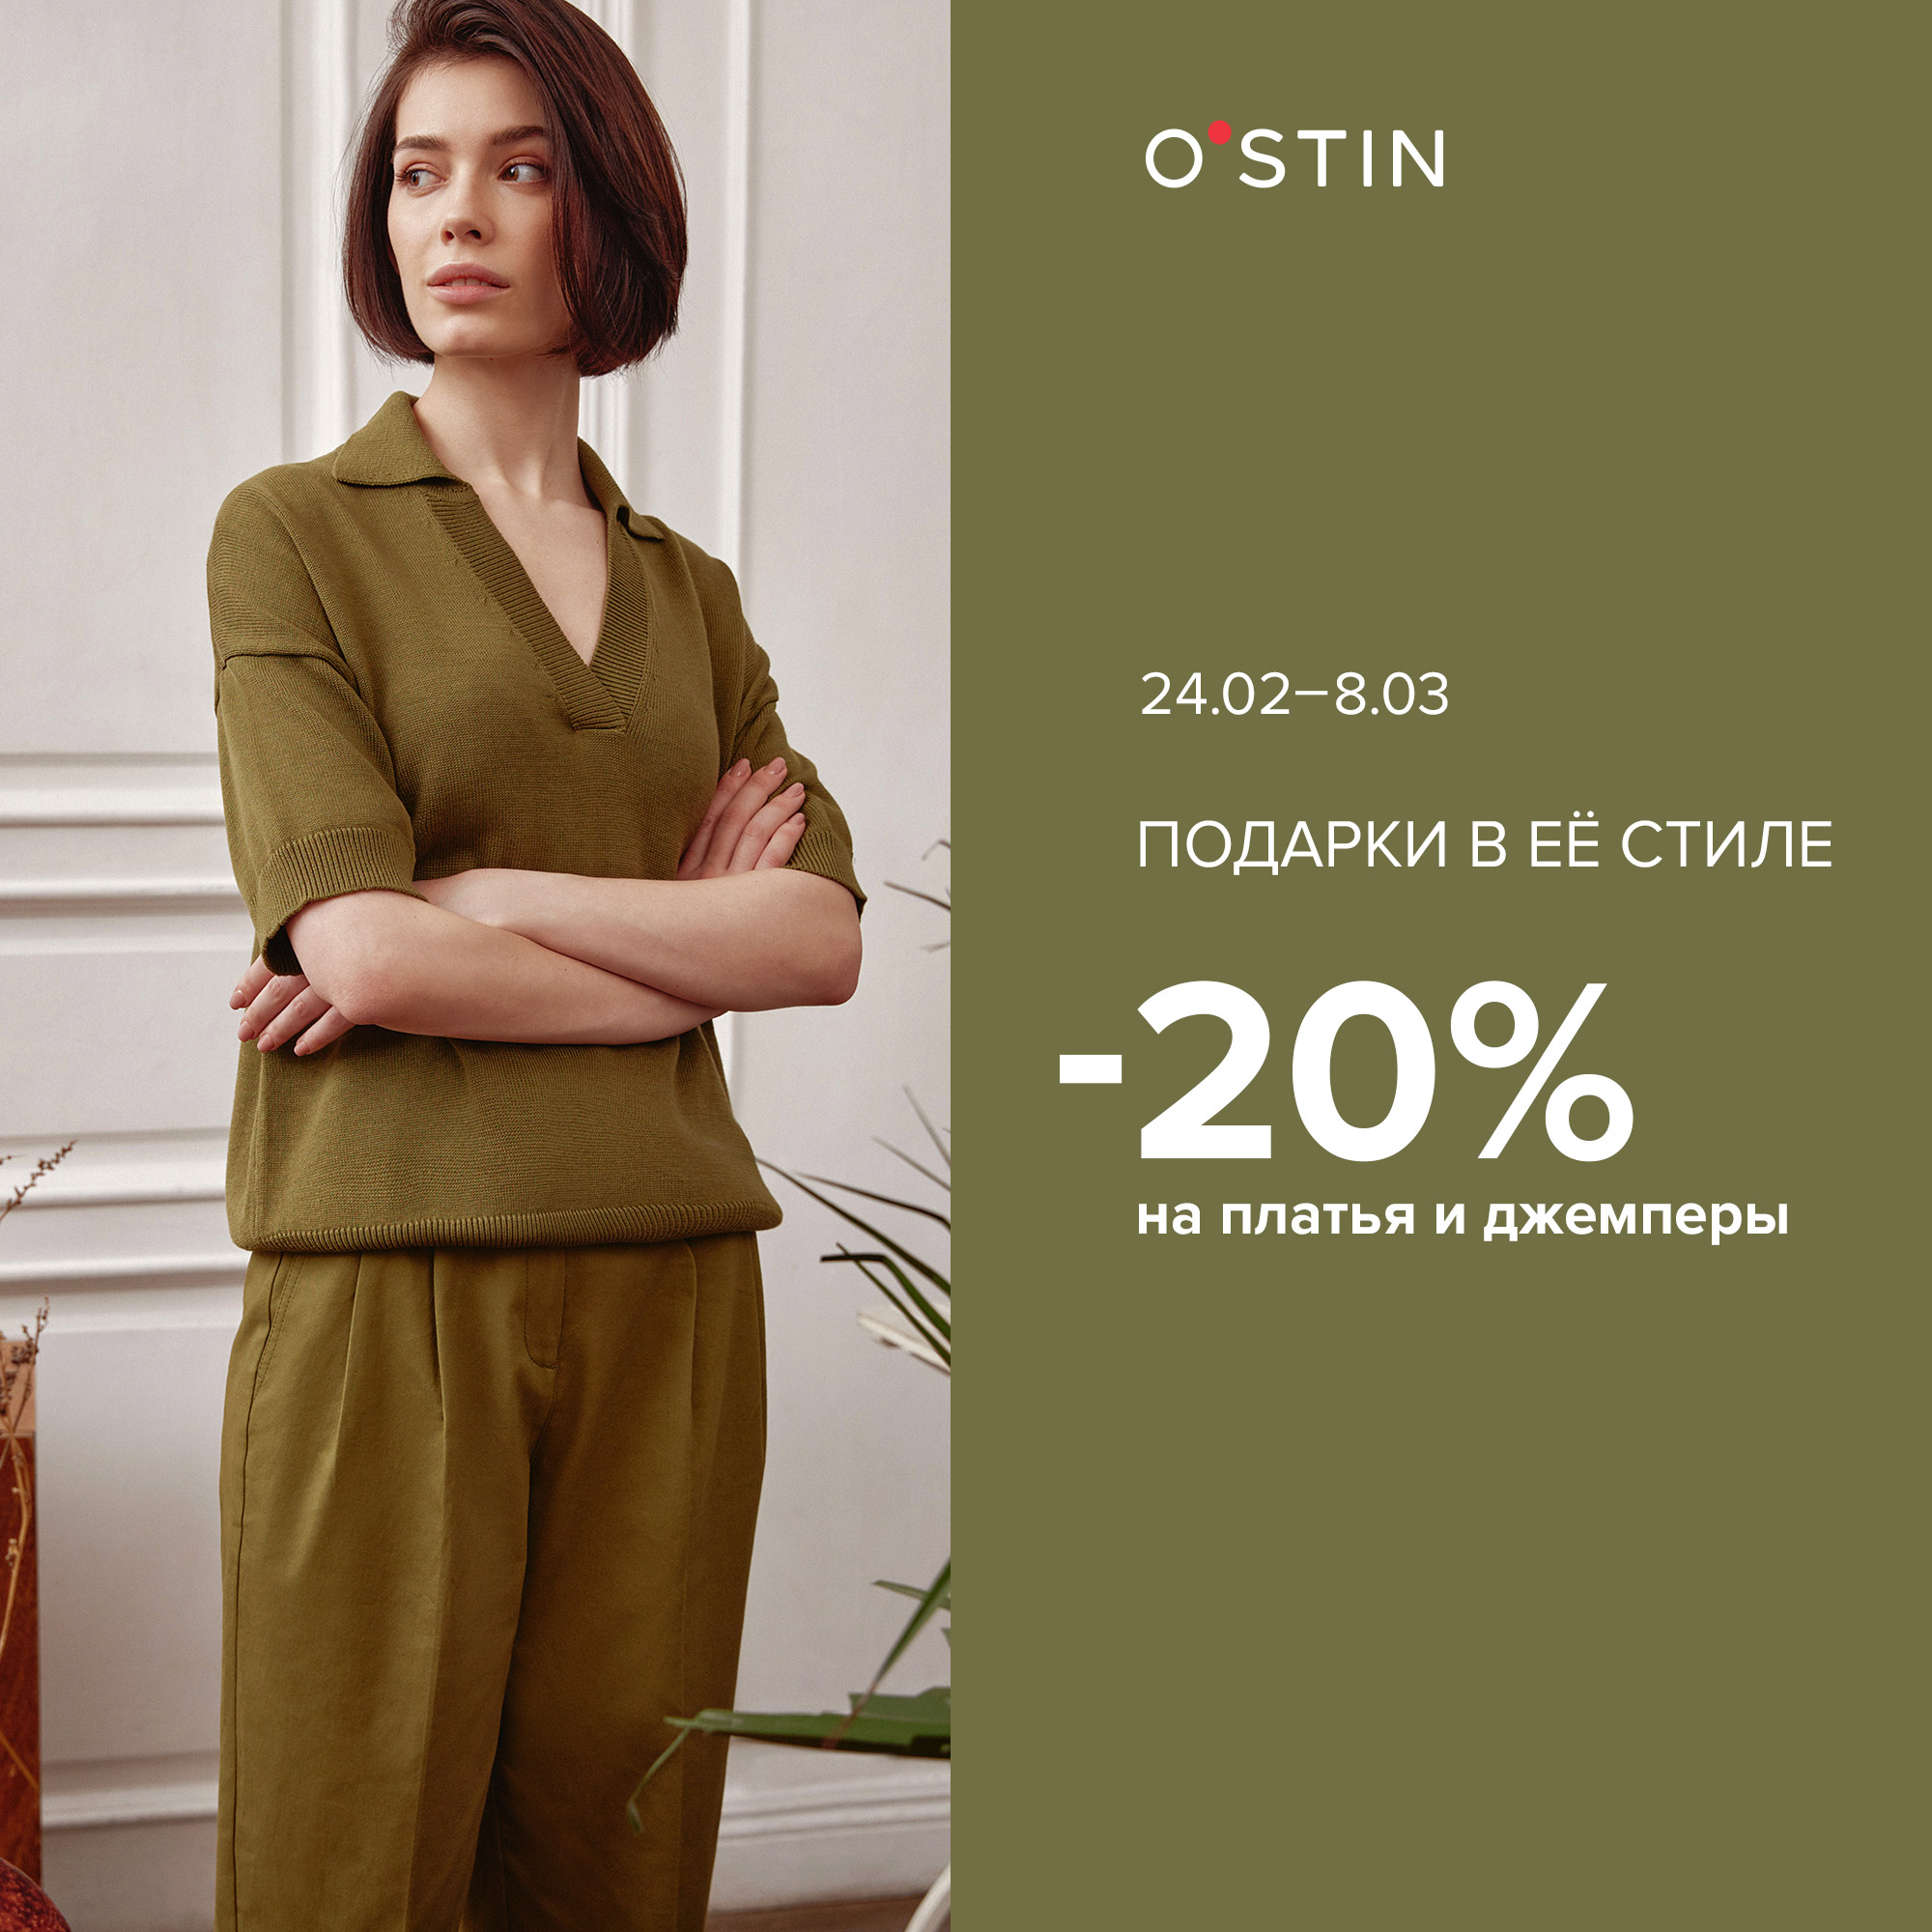 20% на платья и джемперы женского ассортимента в O`STIN